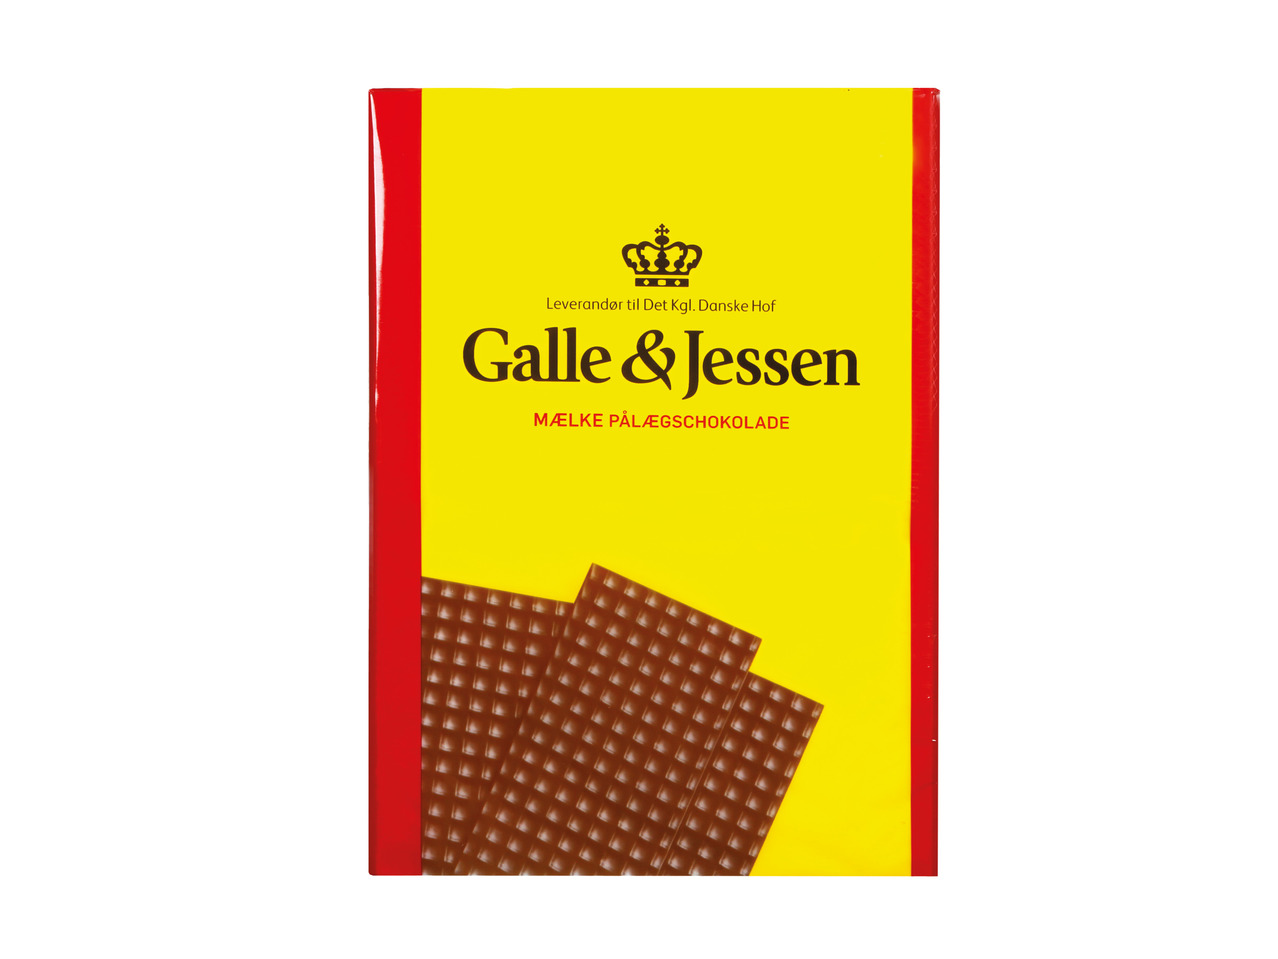 GALLE & JESSEN Pålægschokolade